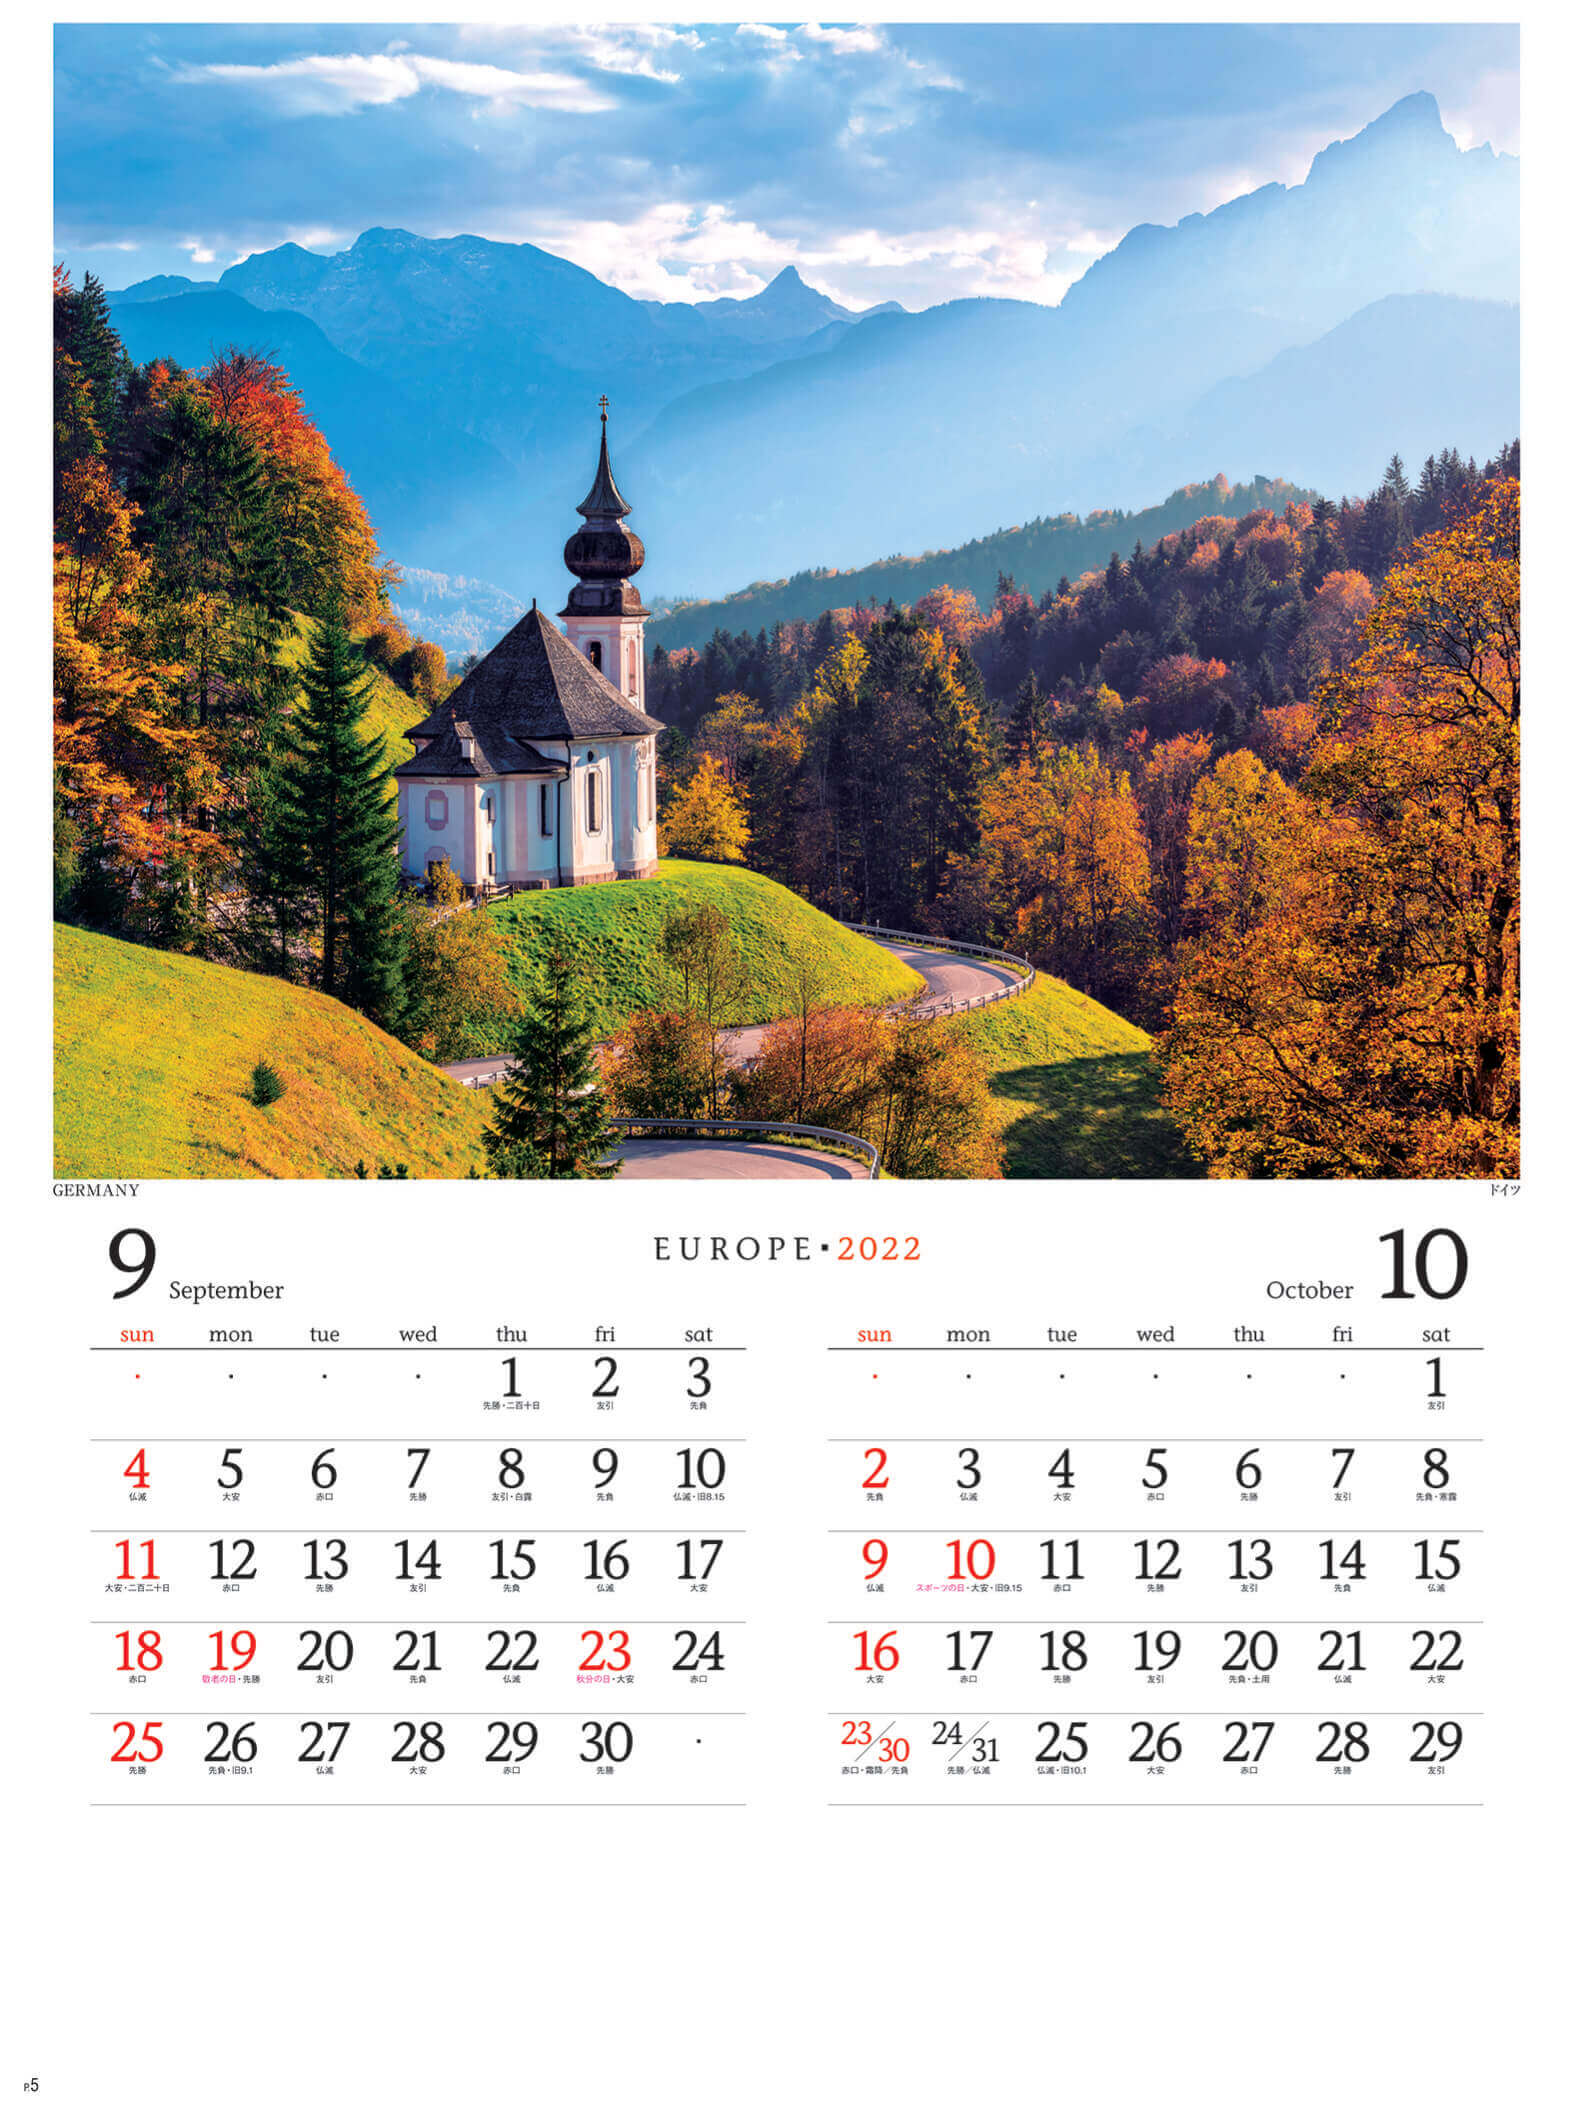 9-10月 ドイツ ヨーロッパ 2022年カレンダーの画像